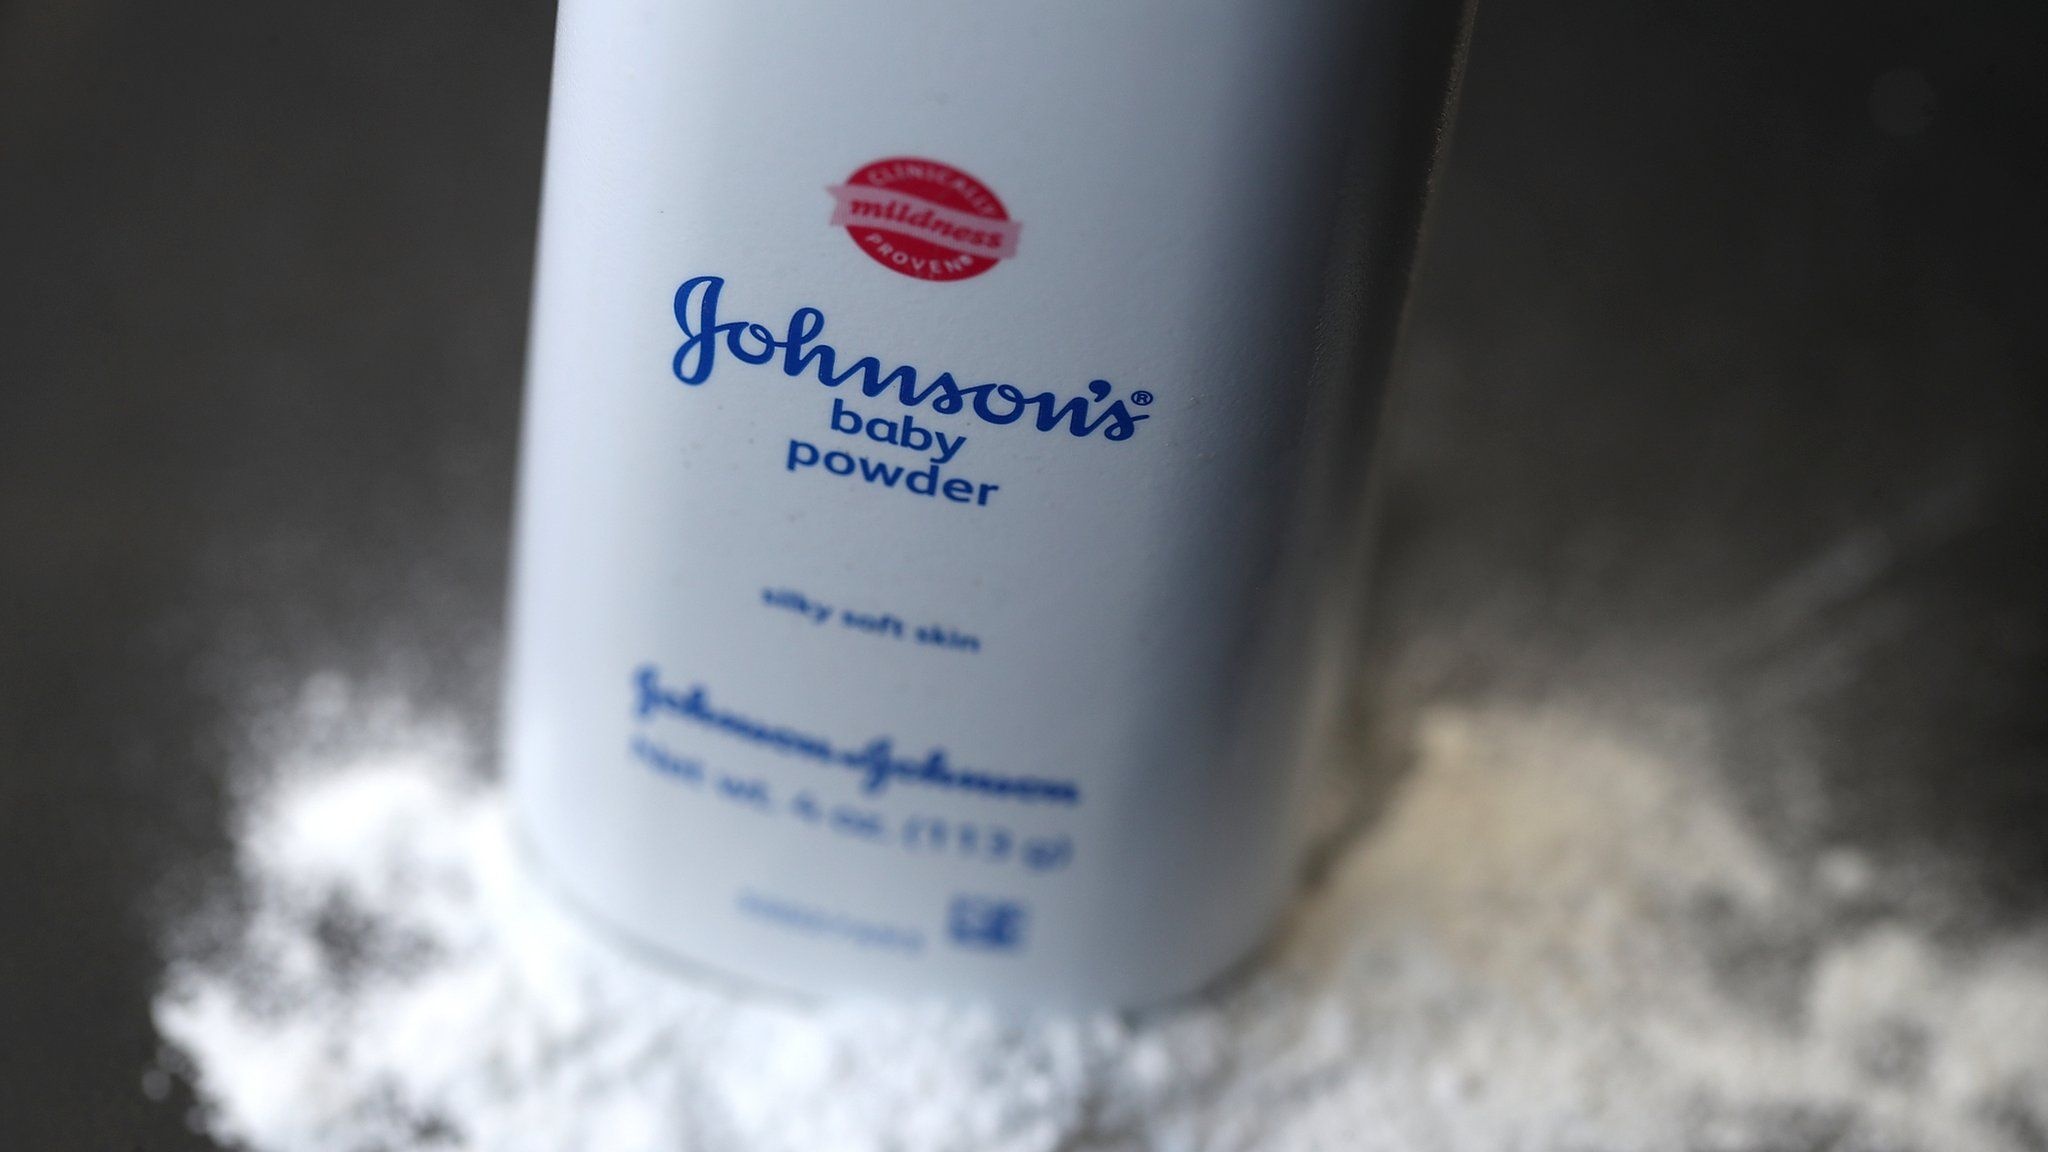 Johnson & Johnson ngừng bán phấn rôm chứa bột talc - ảnh 1